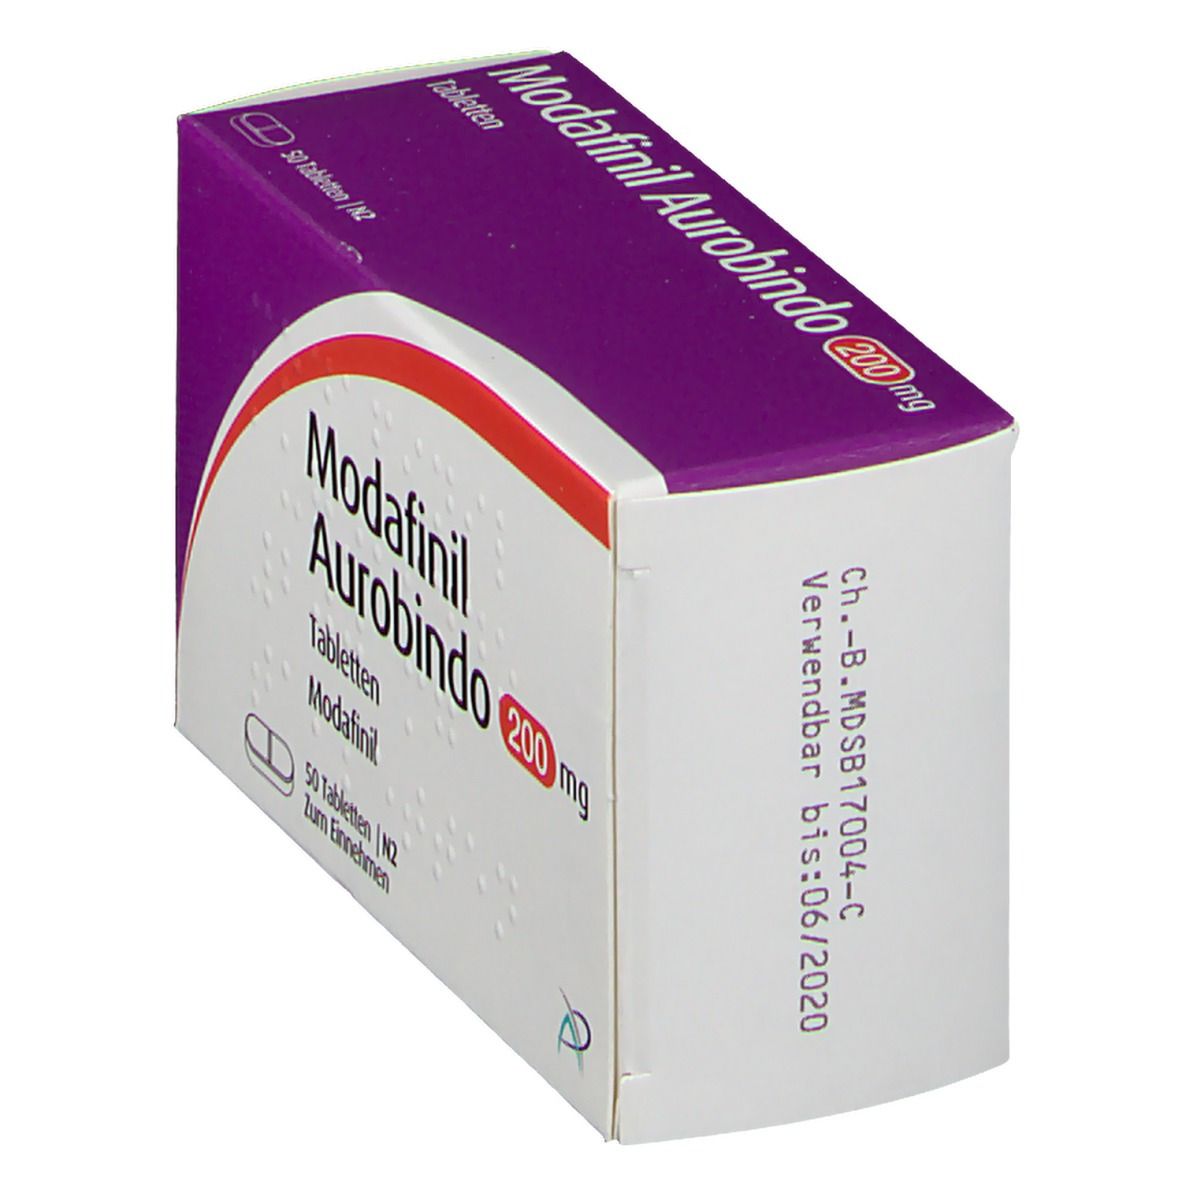 Modafinil Aurobindo 200 mg